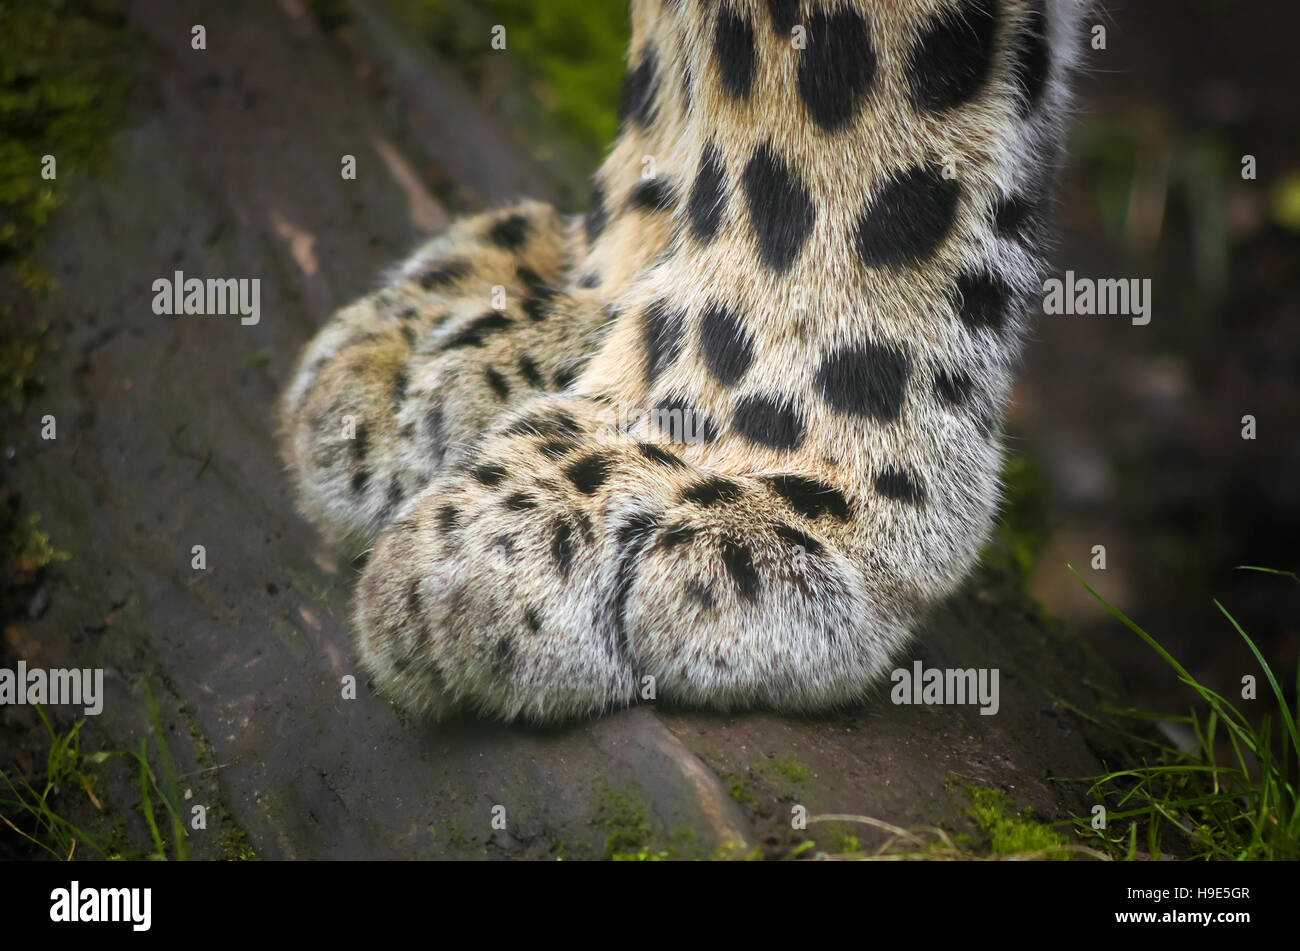 Photo en gros plan d'un léopard. Concept pour une douceur et souplesse combinée avec le pouvoir. Banque D'Images